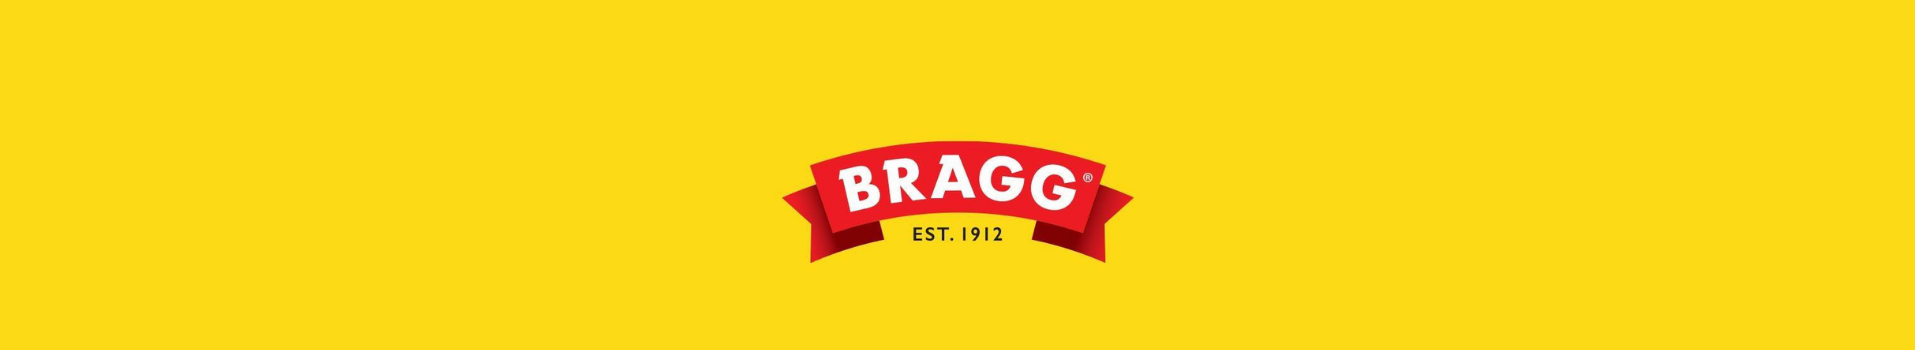 Bragg's